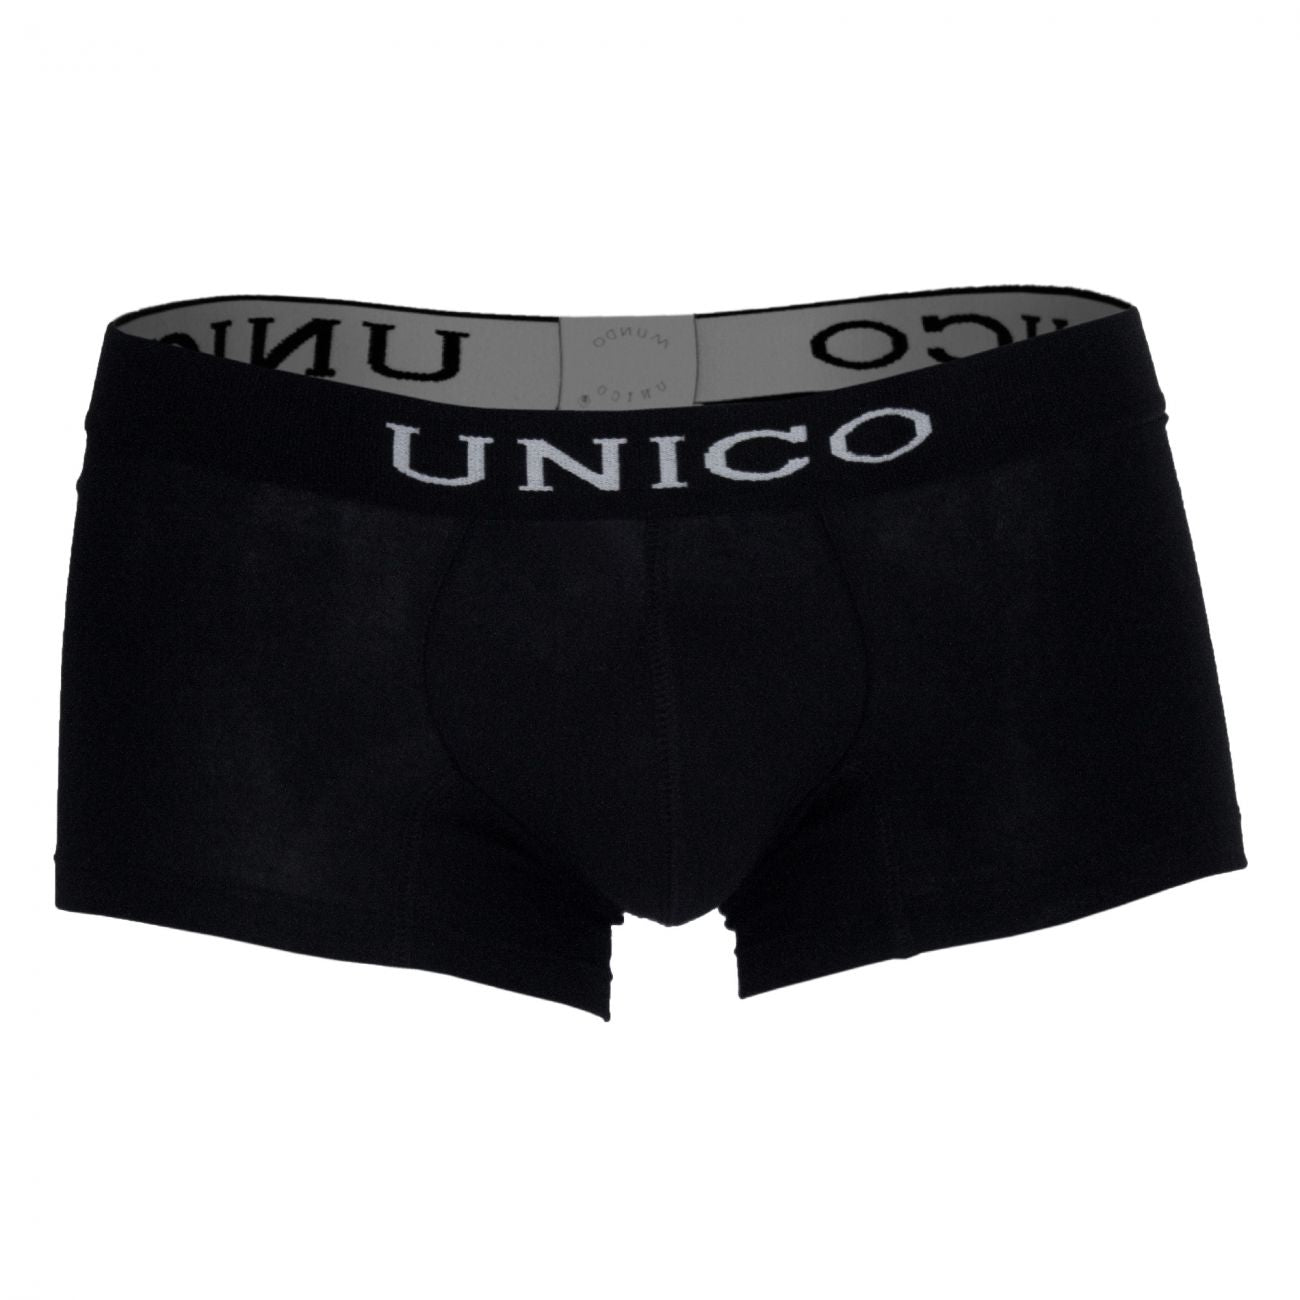 Unico 9610080199 Boxer Briefs Intenso Black